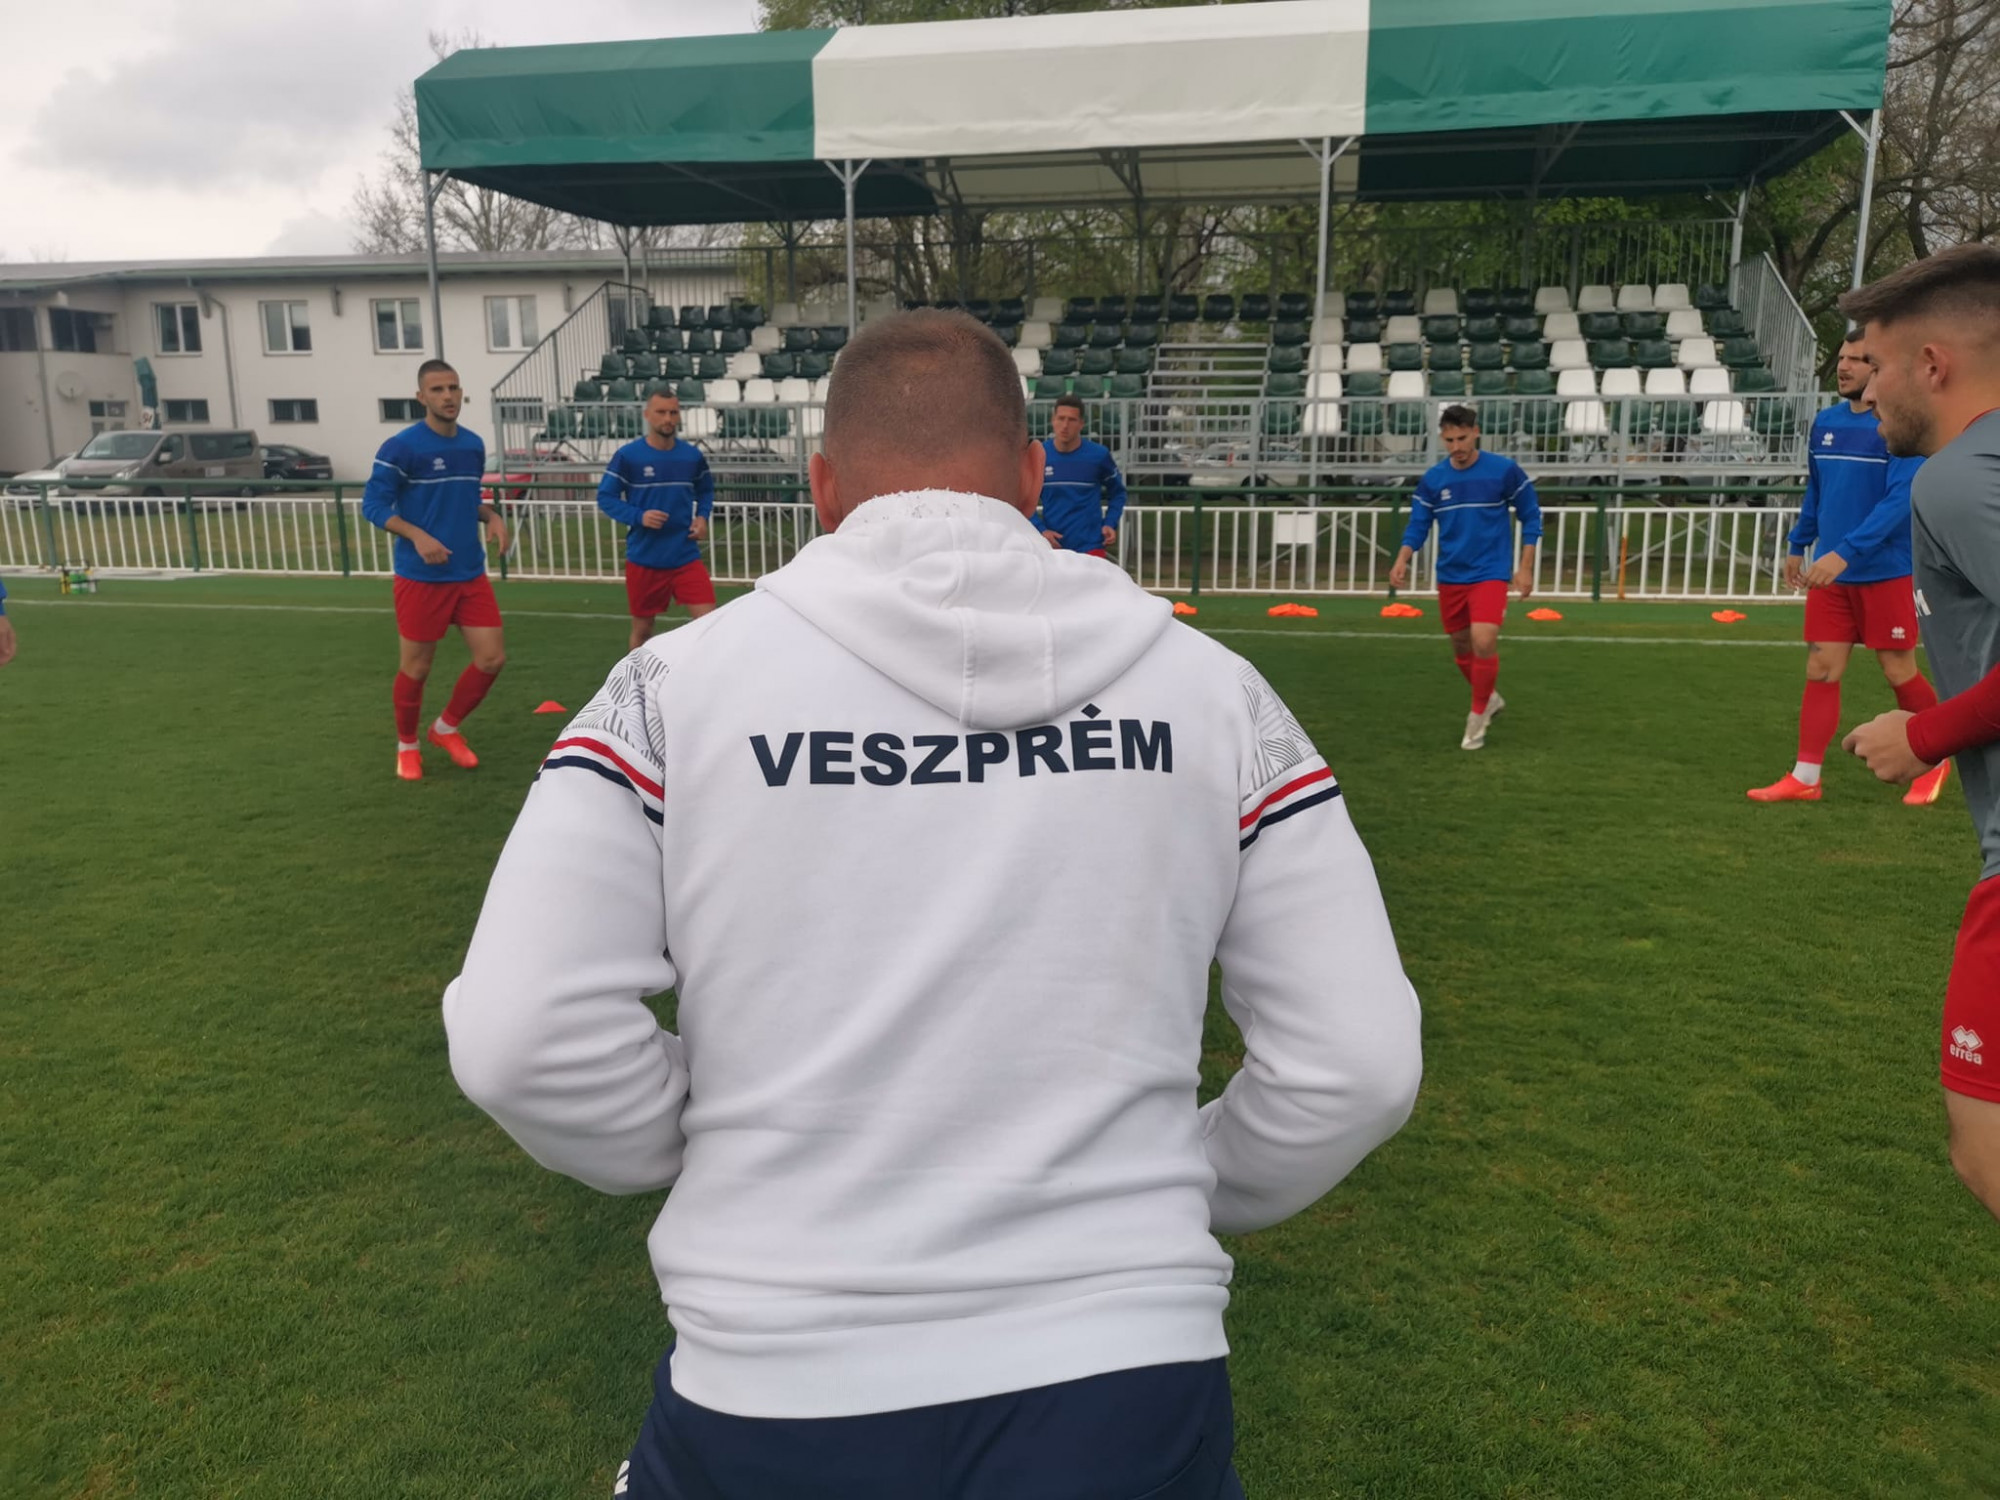 A veszprémi focicsapat edzője elmesélte, hogy a vakondok miatt nem tudnak hazai pályán játszani